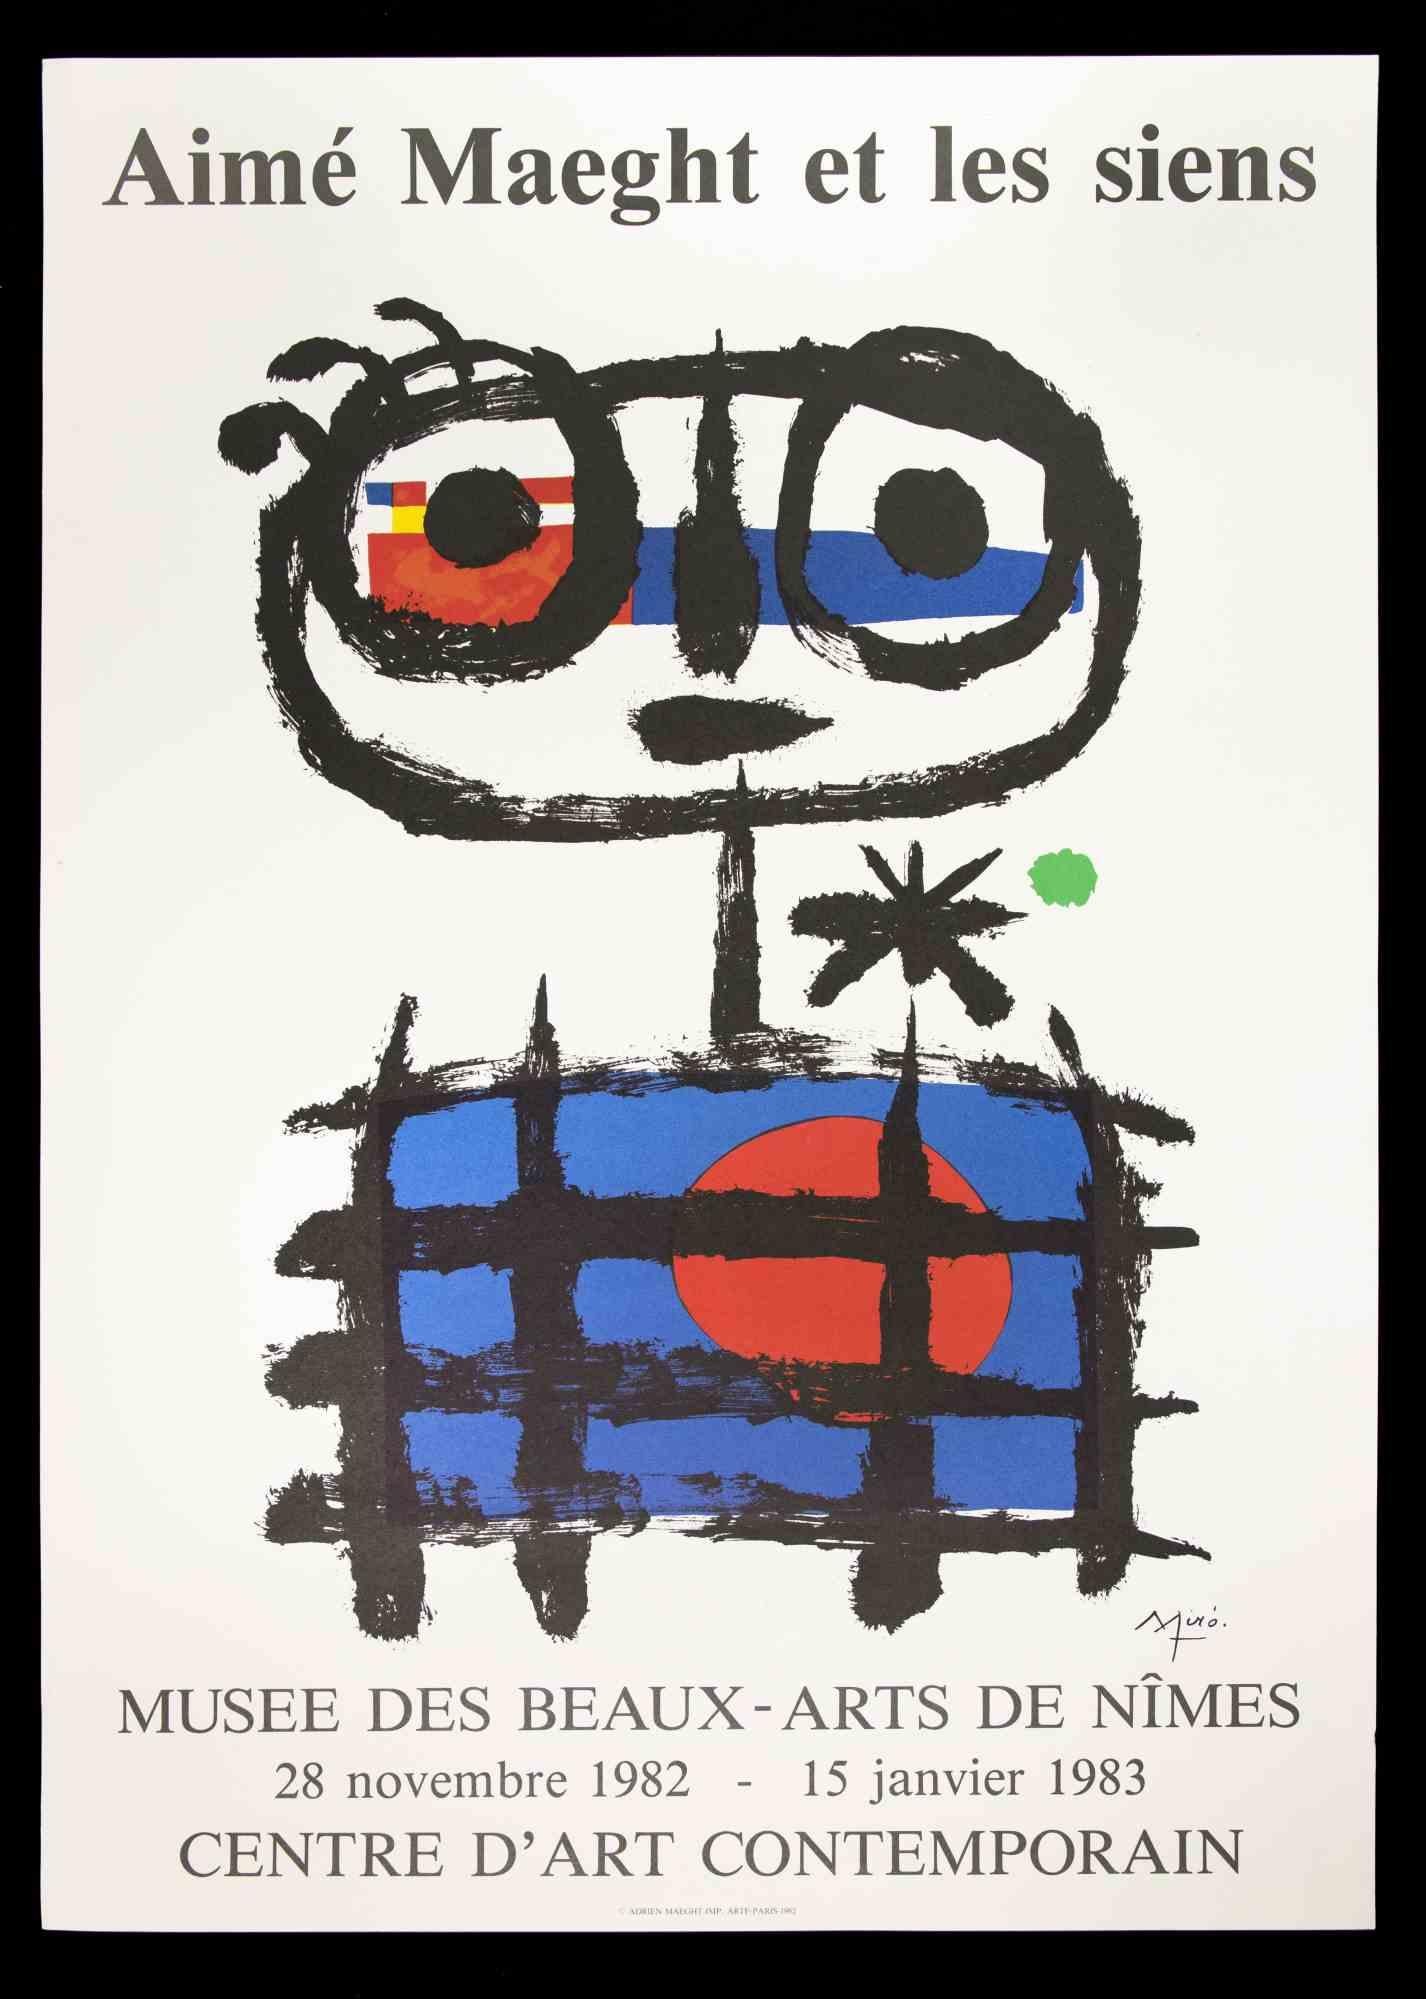 Joan Miró Abstract Print - Mirò Poster Exhibition Musée de Beaux Arts - Vintage Offset Print - 1982